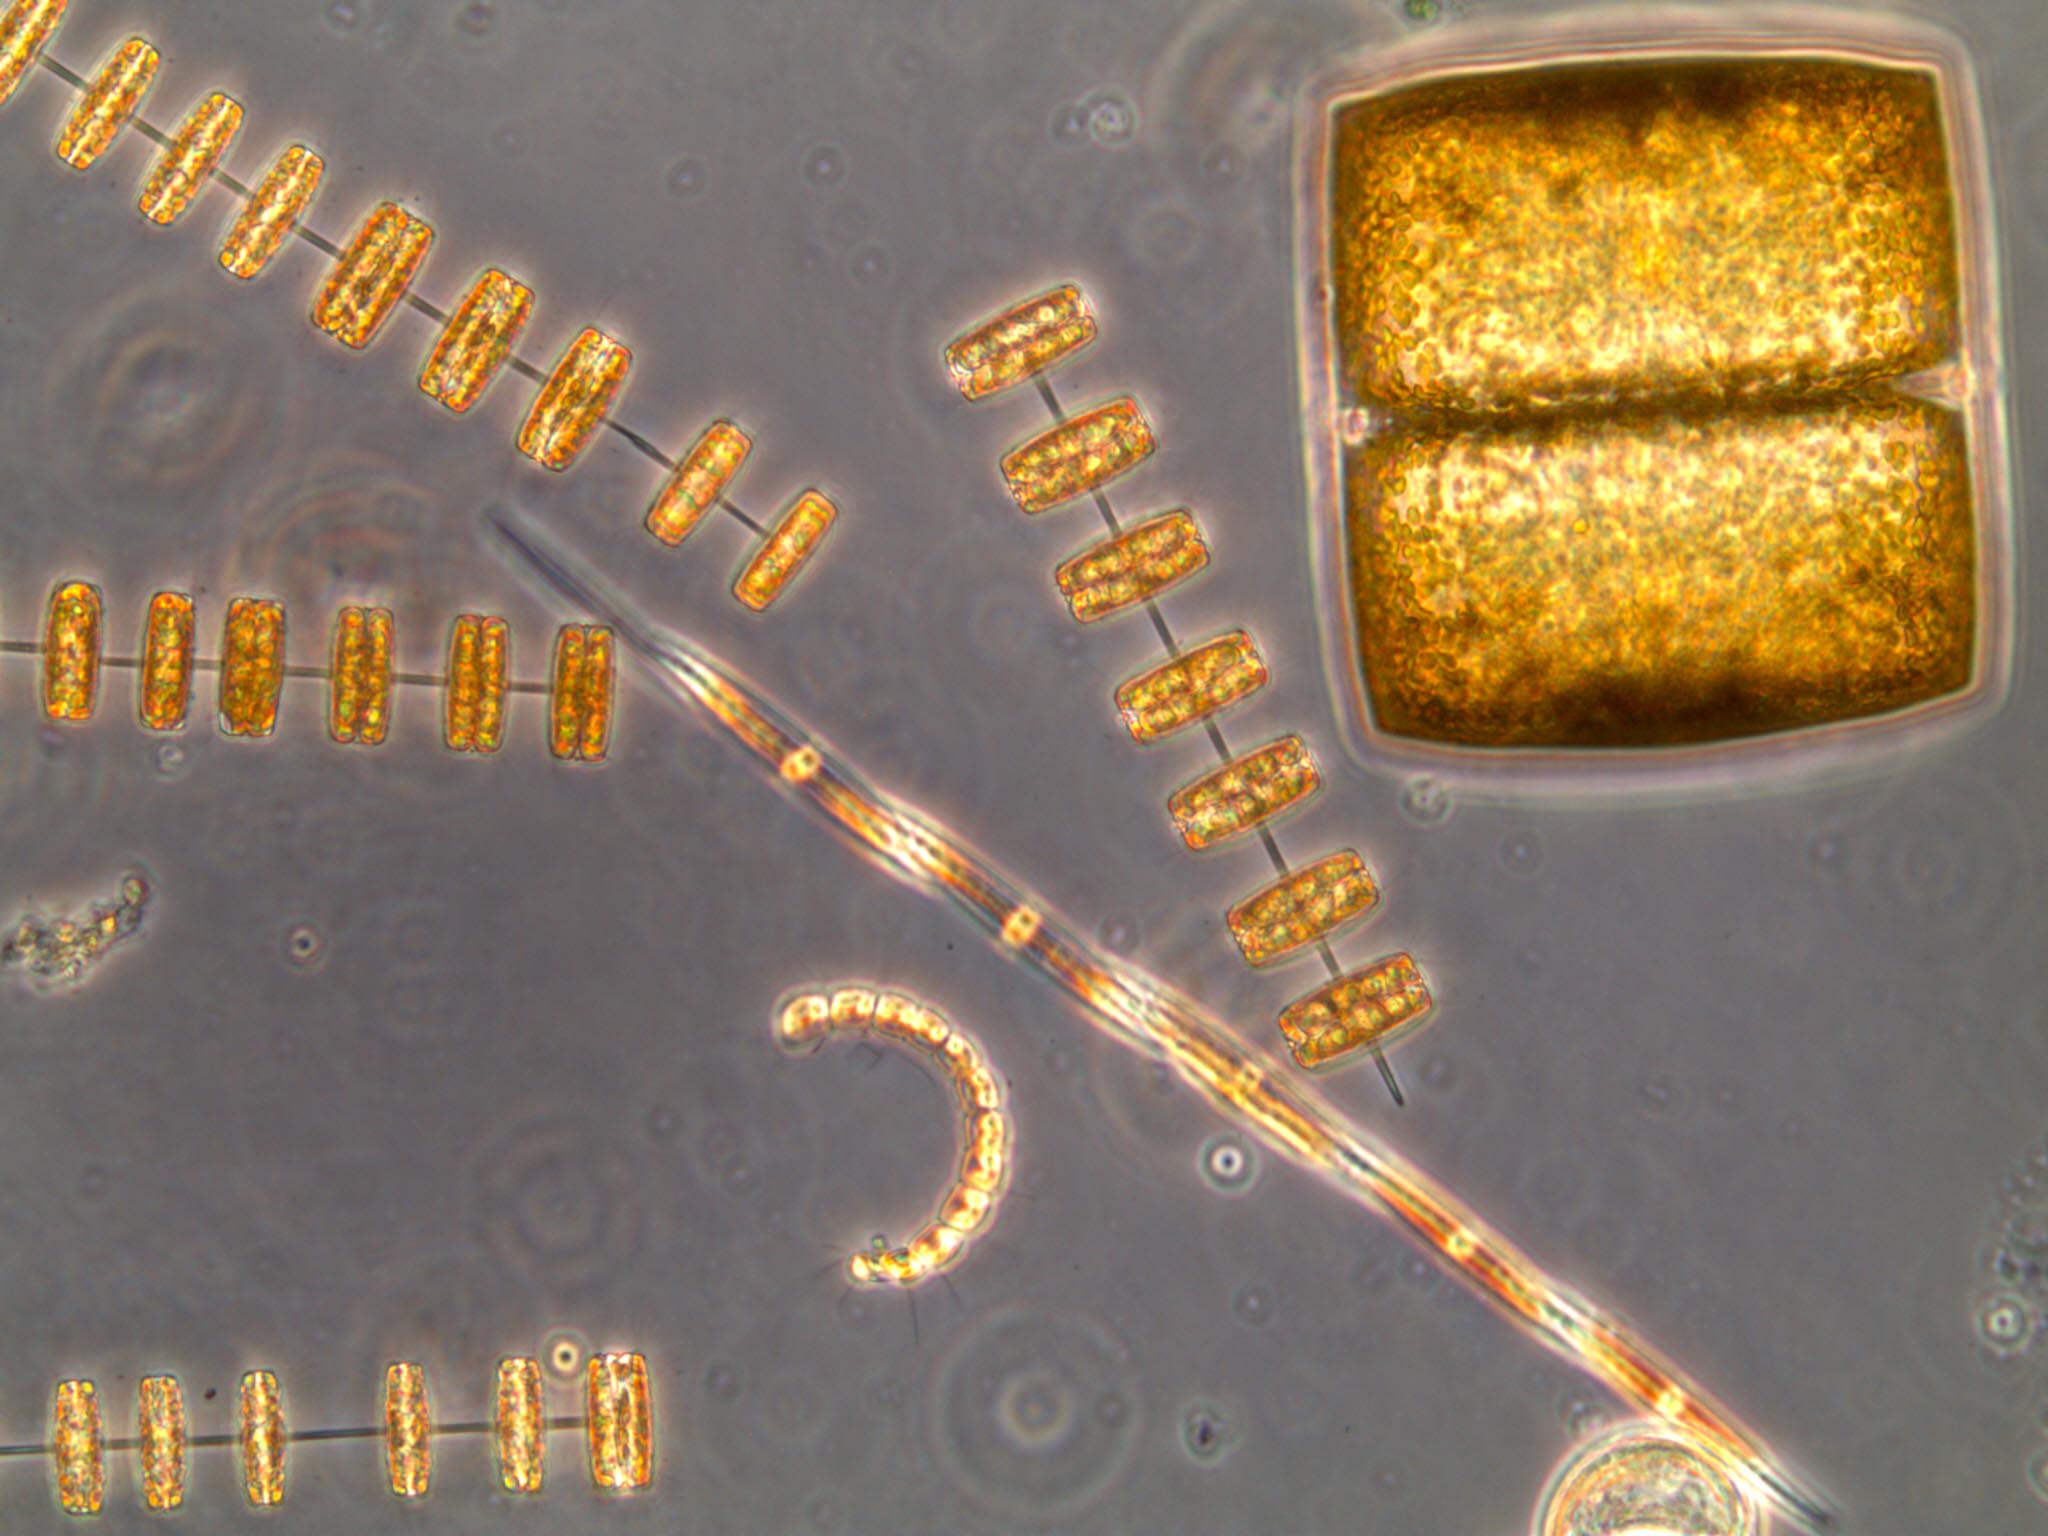 Células de diatomeas observadas al microscopio. Imagen: Isabel G. Teixeira / CSIC